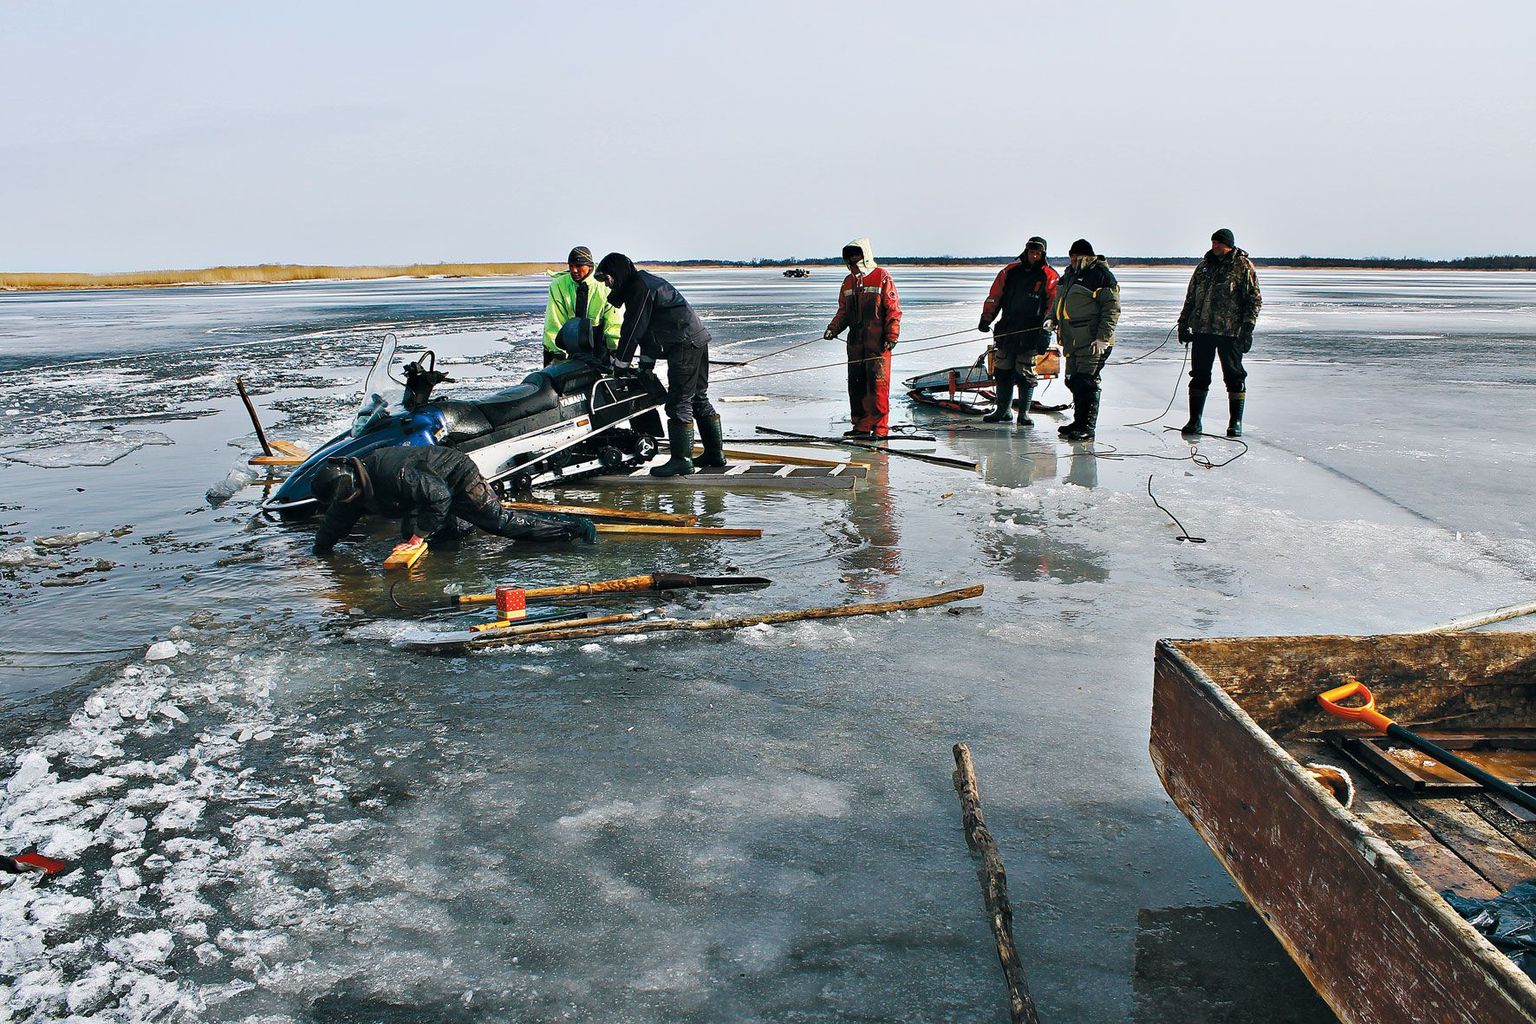 Piirissaare kalurid tõmbasid laupäeval Uhtininas järvest välja nelja Läti kalamehe mootorsaani, mis uppus seal ära reede päeval. Kalamehed pääsesid õnnetusest elu ja tervisega.